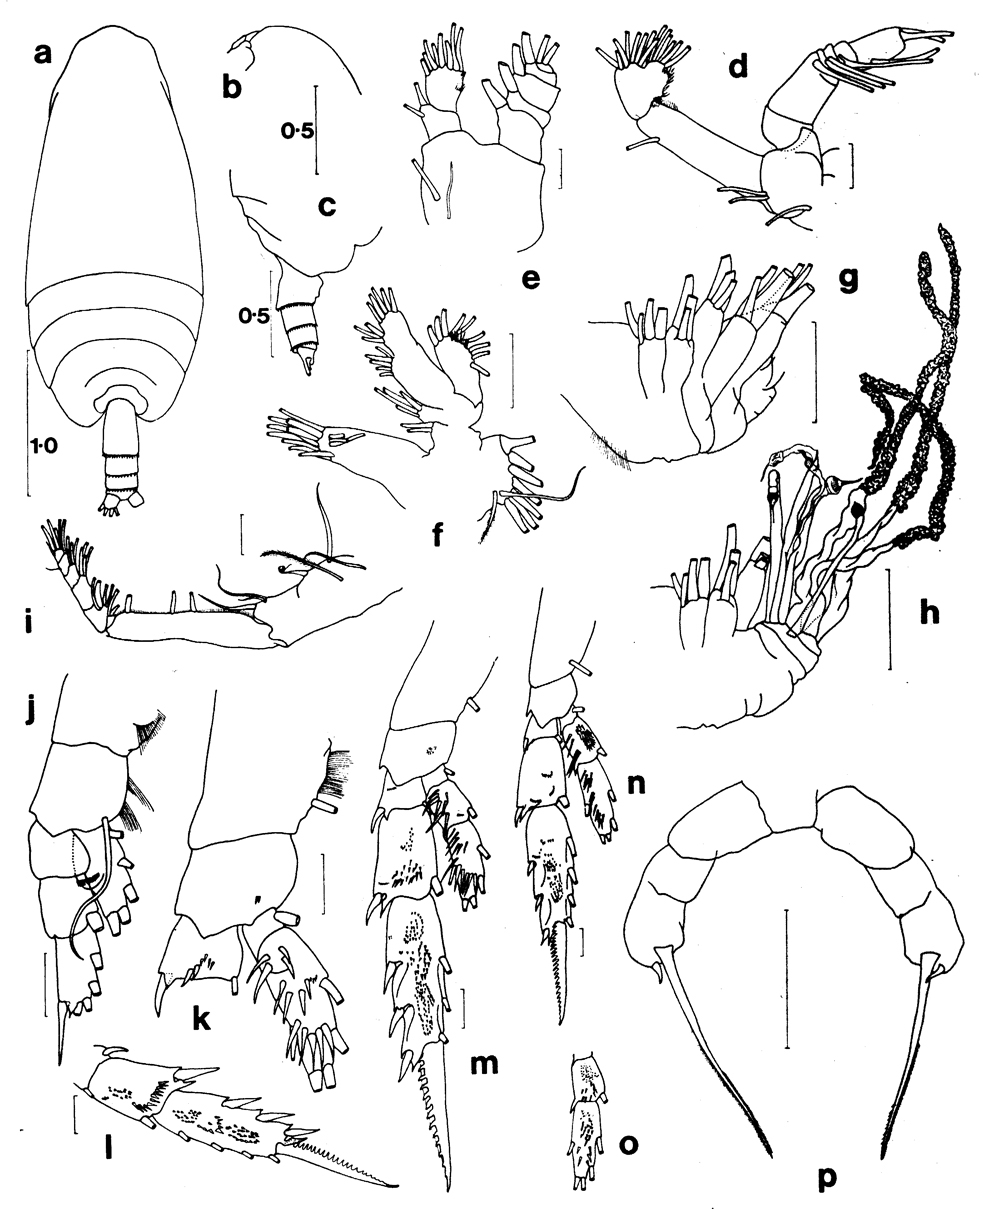 Espèce Amallothrix aspinosa - Planche 1 de figures morphologiques